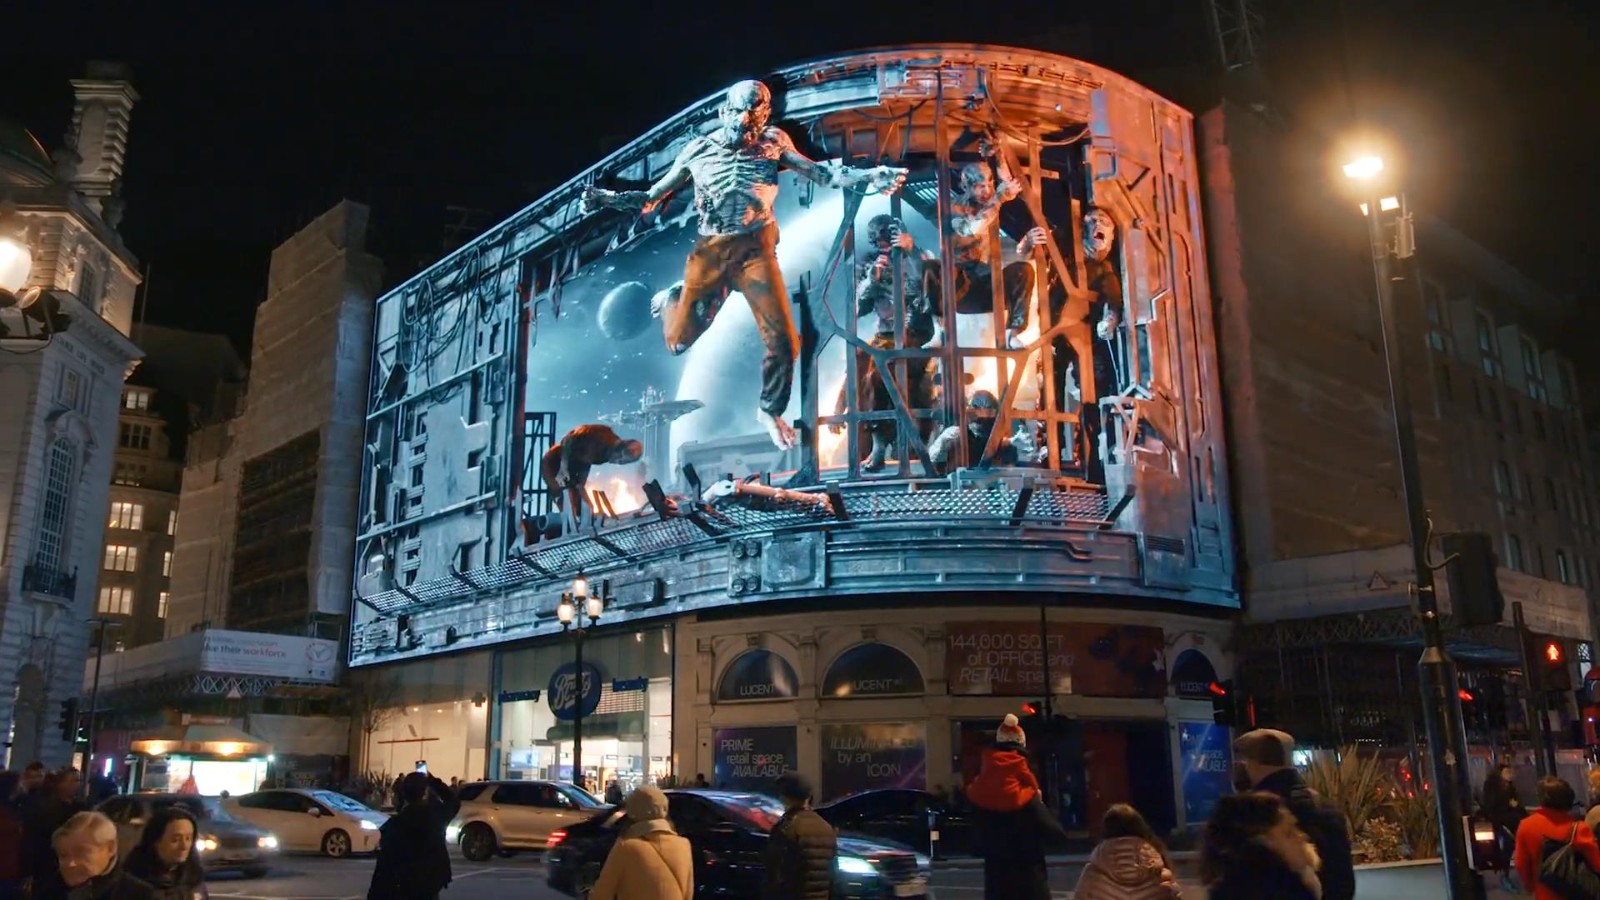 《木卫四协议》3D街头广告 怪物扑面而来路人吓尿